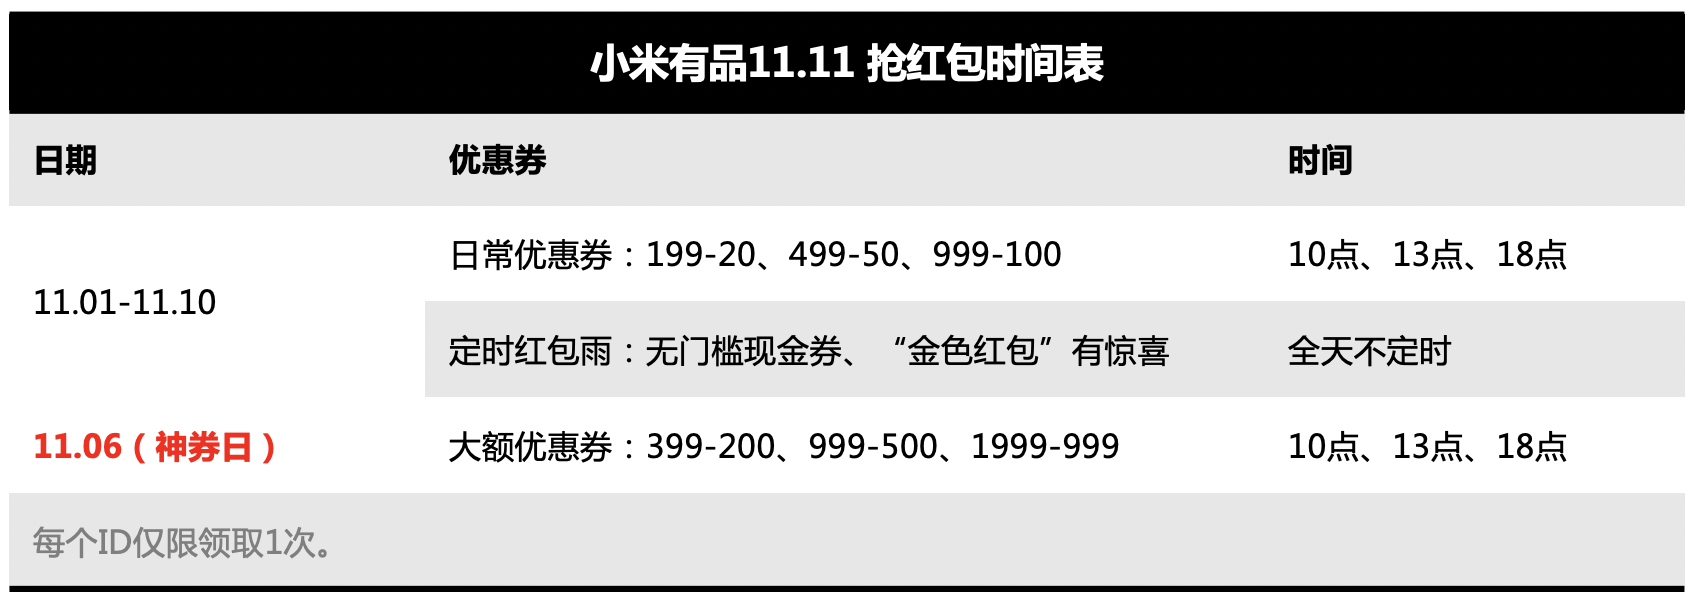 小米有品开始11.11预售 订金最高膨胀11倍 智能公会